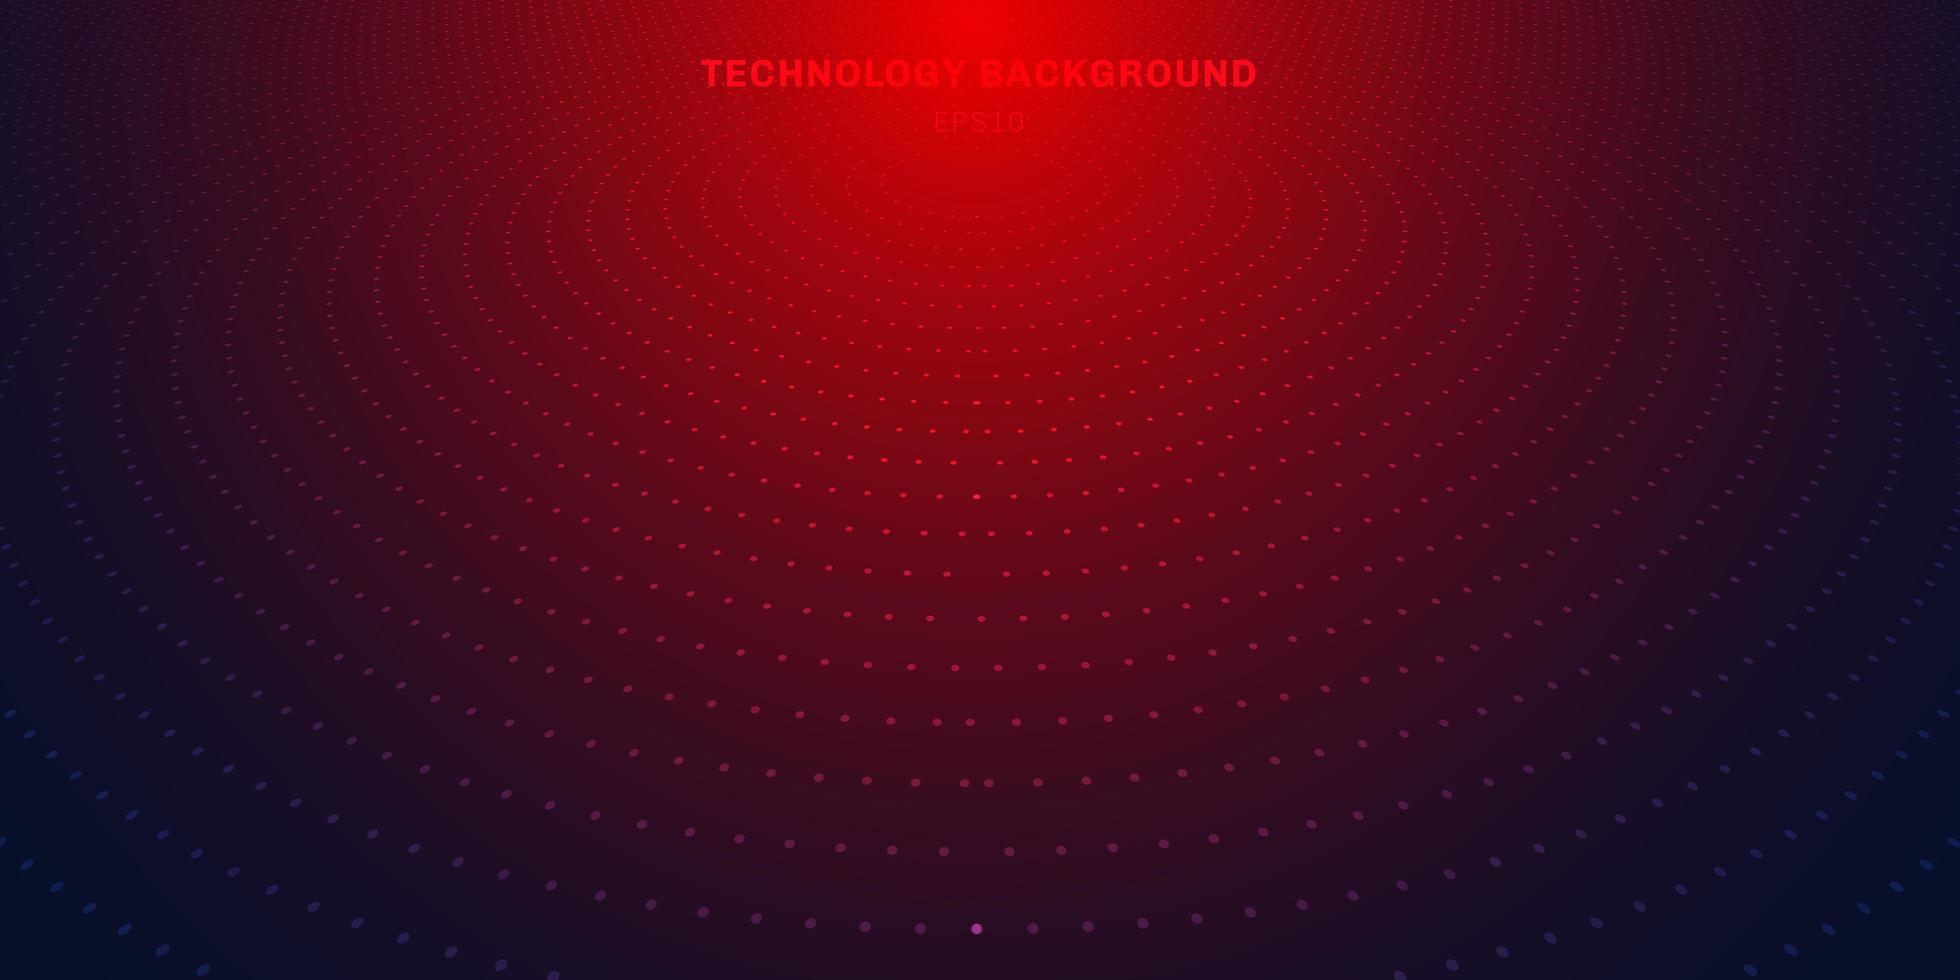 abstracte rode radiale halftone puntenpatroon op donkerblauwe gradiëntachtergrond. technologie digitaal concept futuristische neonverlichting. vector